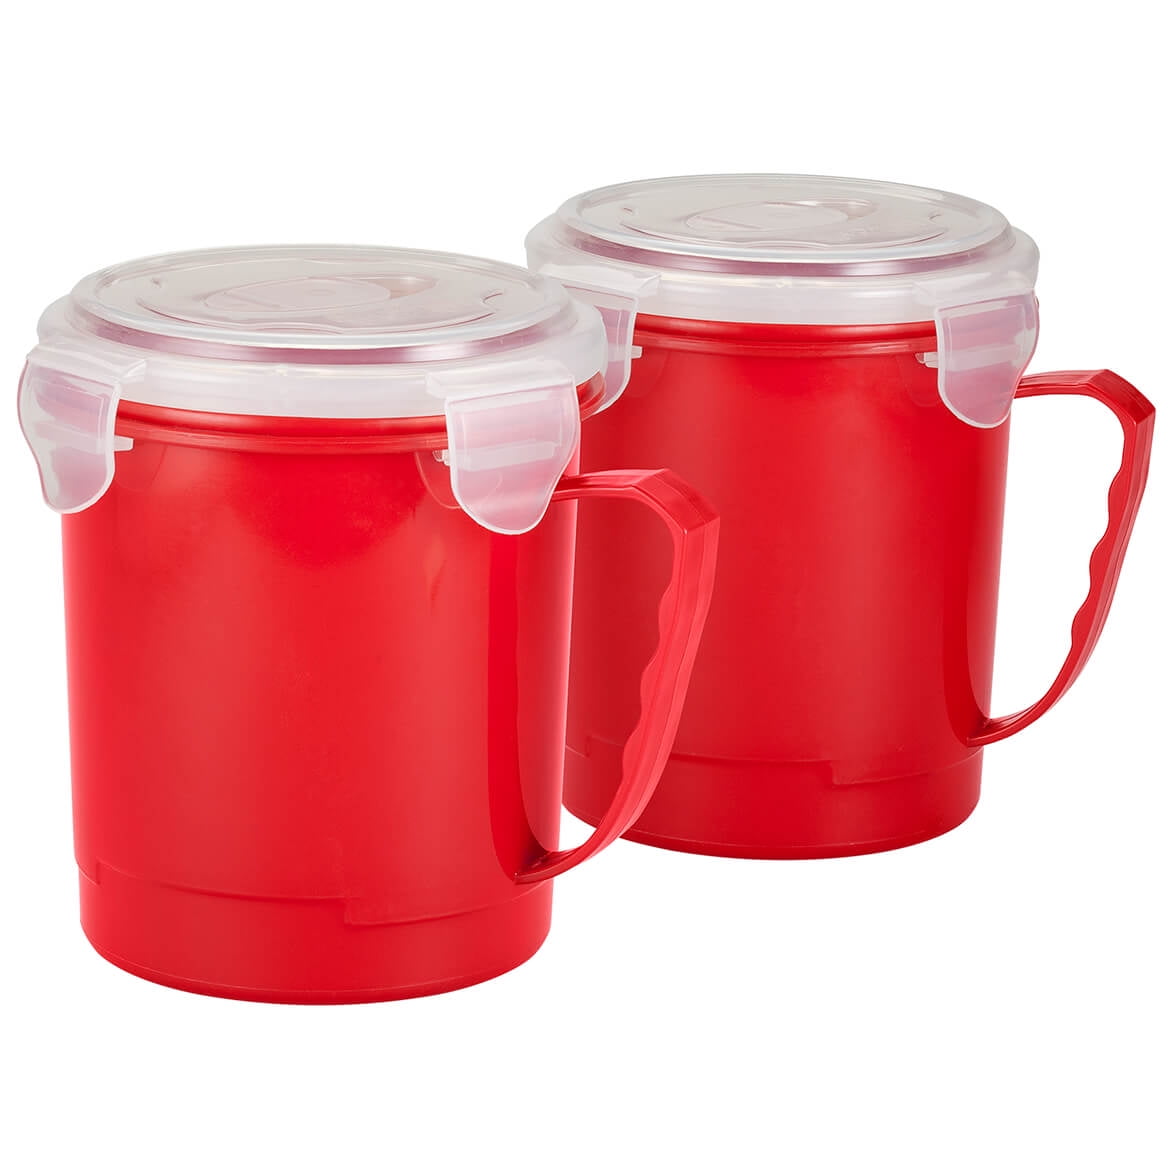 Evriholder Campbell's Microwave Mug - Red - 22 oz